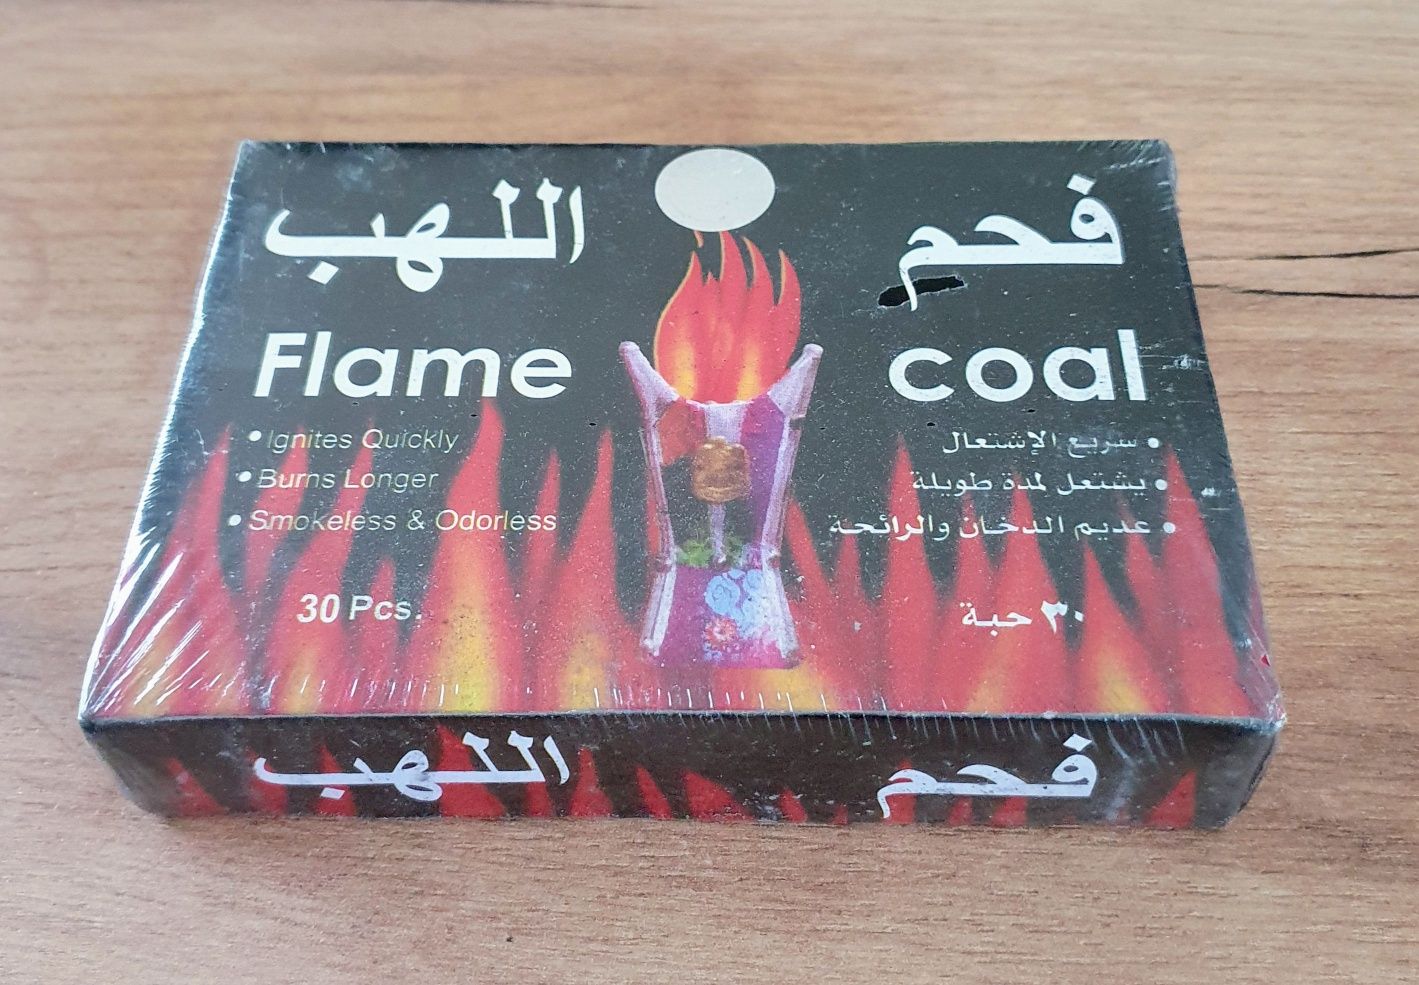 Shisha węgiel fajka wodna Flame Coal z Dubaju